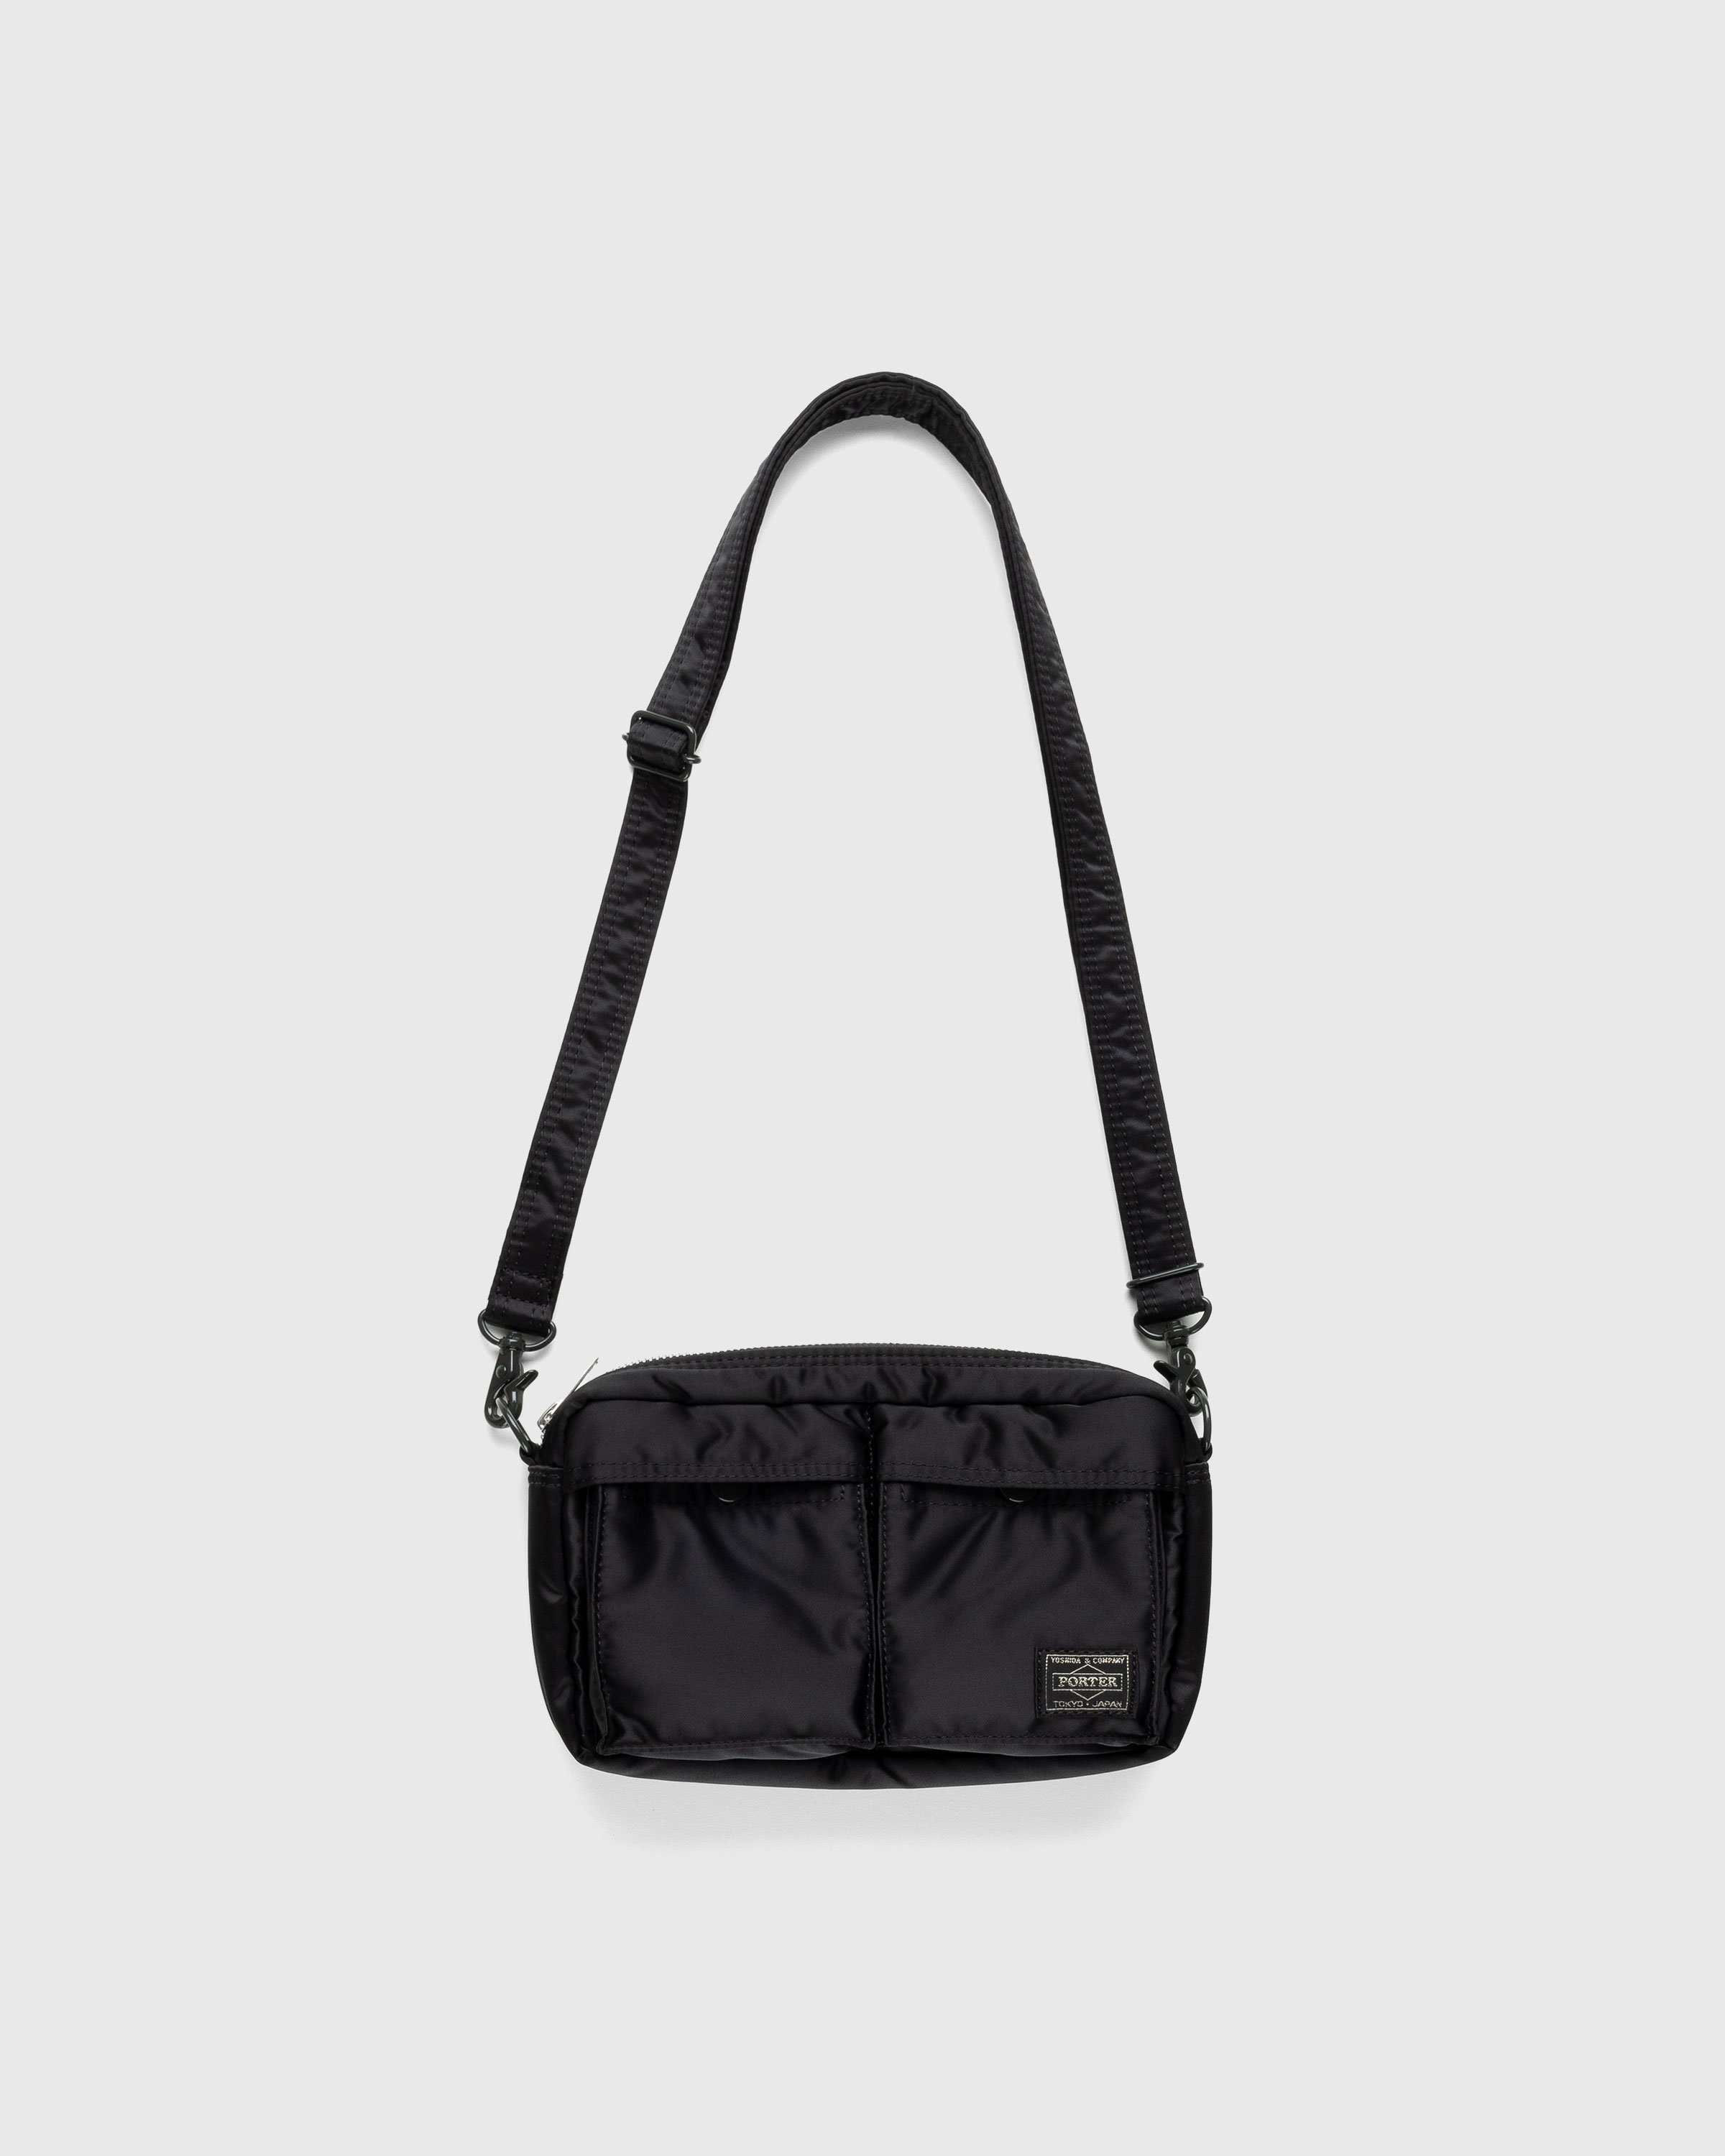 Porter-Yoshida & Co. - Tanker Shoulder Bag Black - Accessories - Black - Image 1